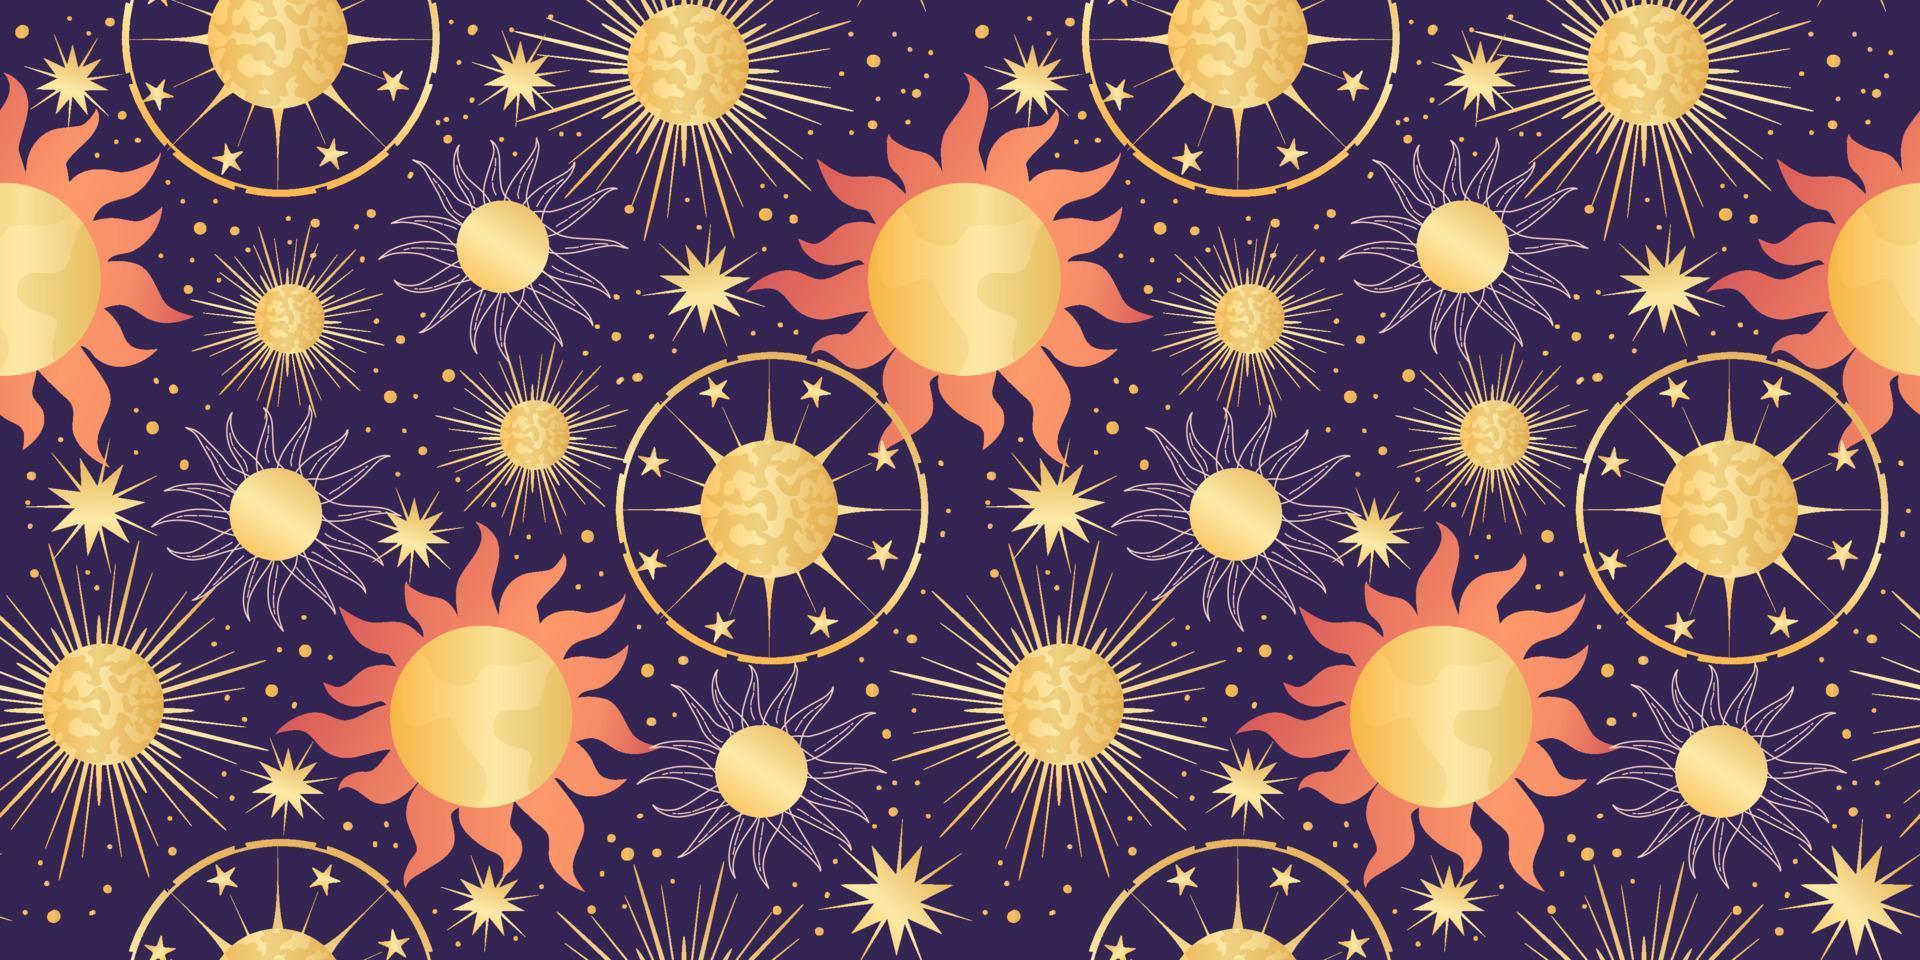 estrela celeste sem costura padrão com sol e planeta. astrologia mágica em estilo boho vintage. sol dourado com raios e estrelas. ilustração vetorial. vetor